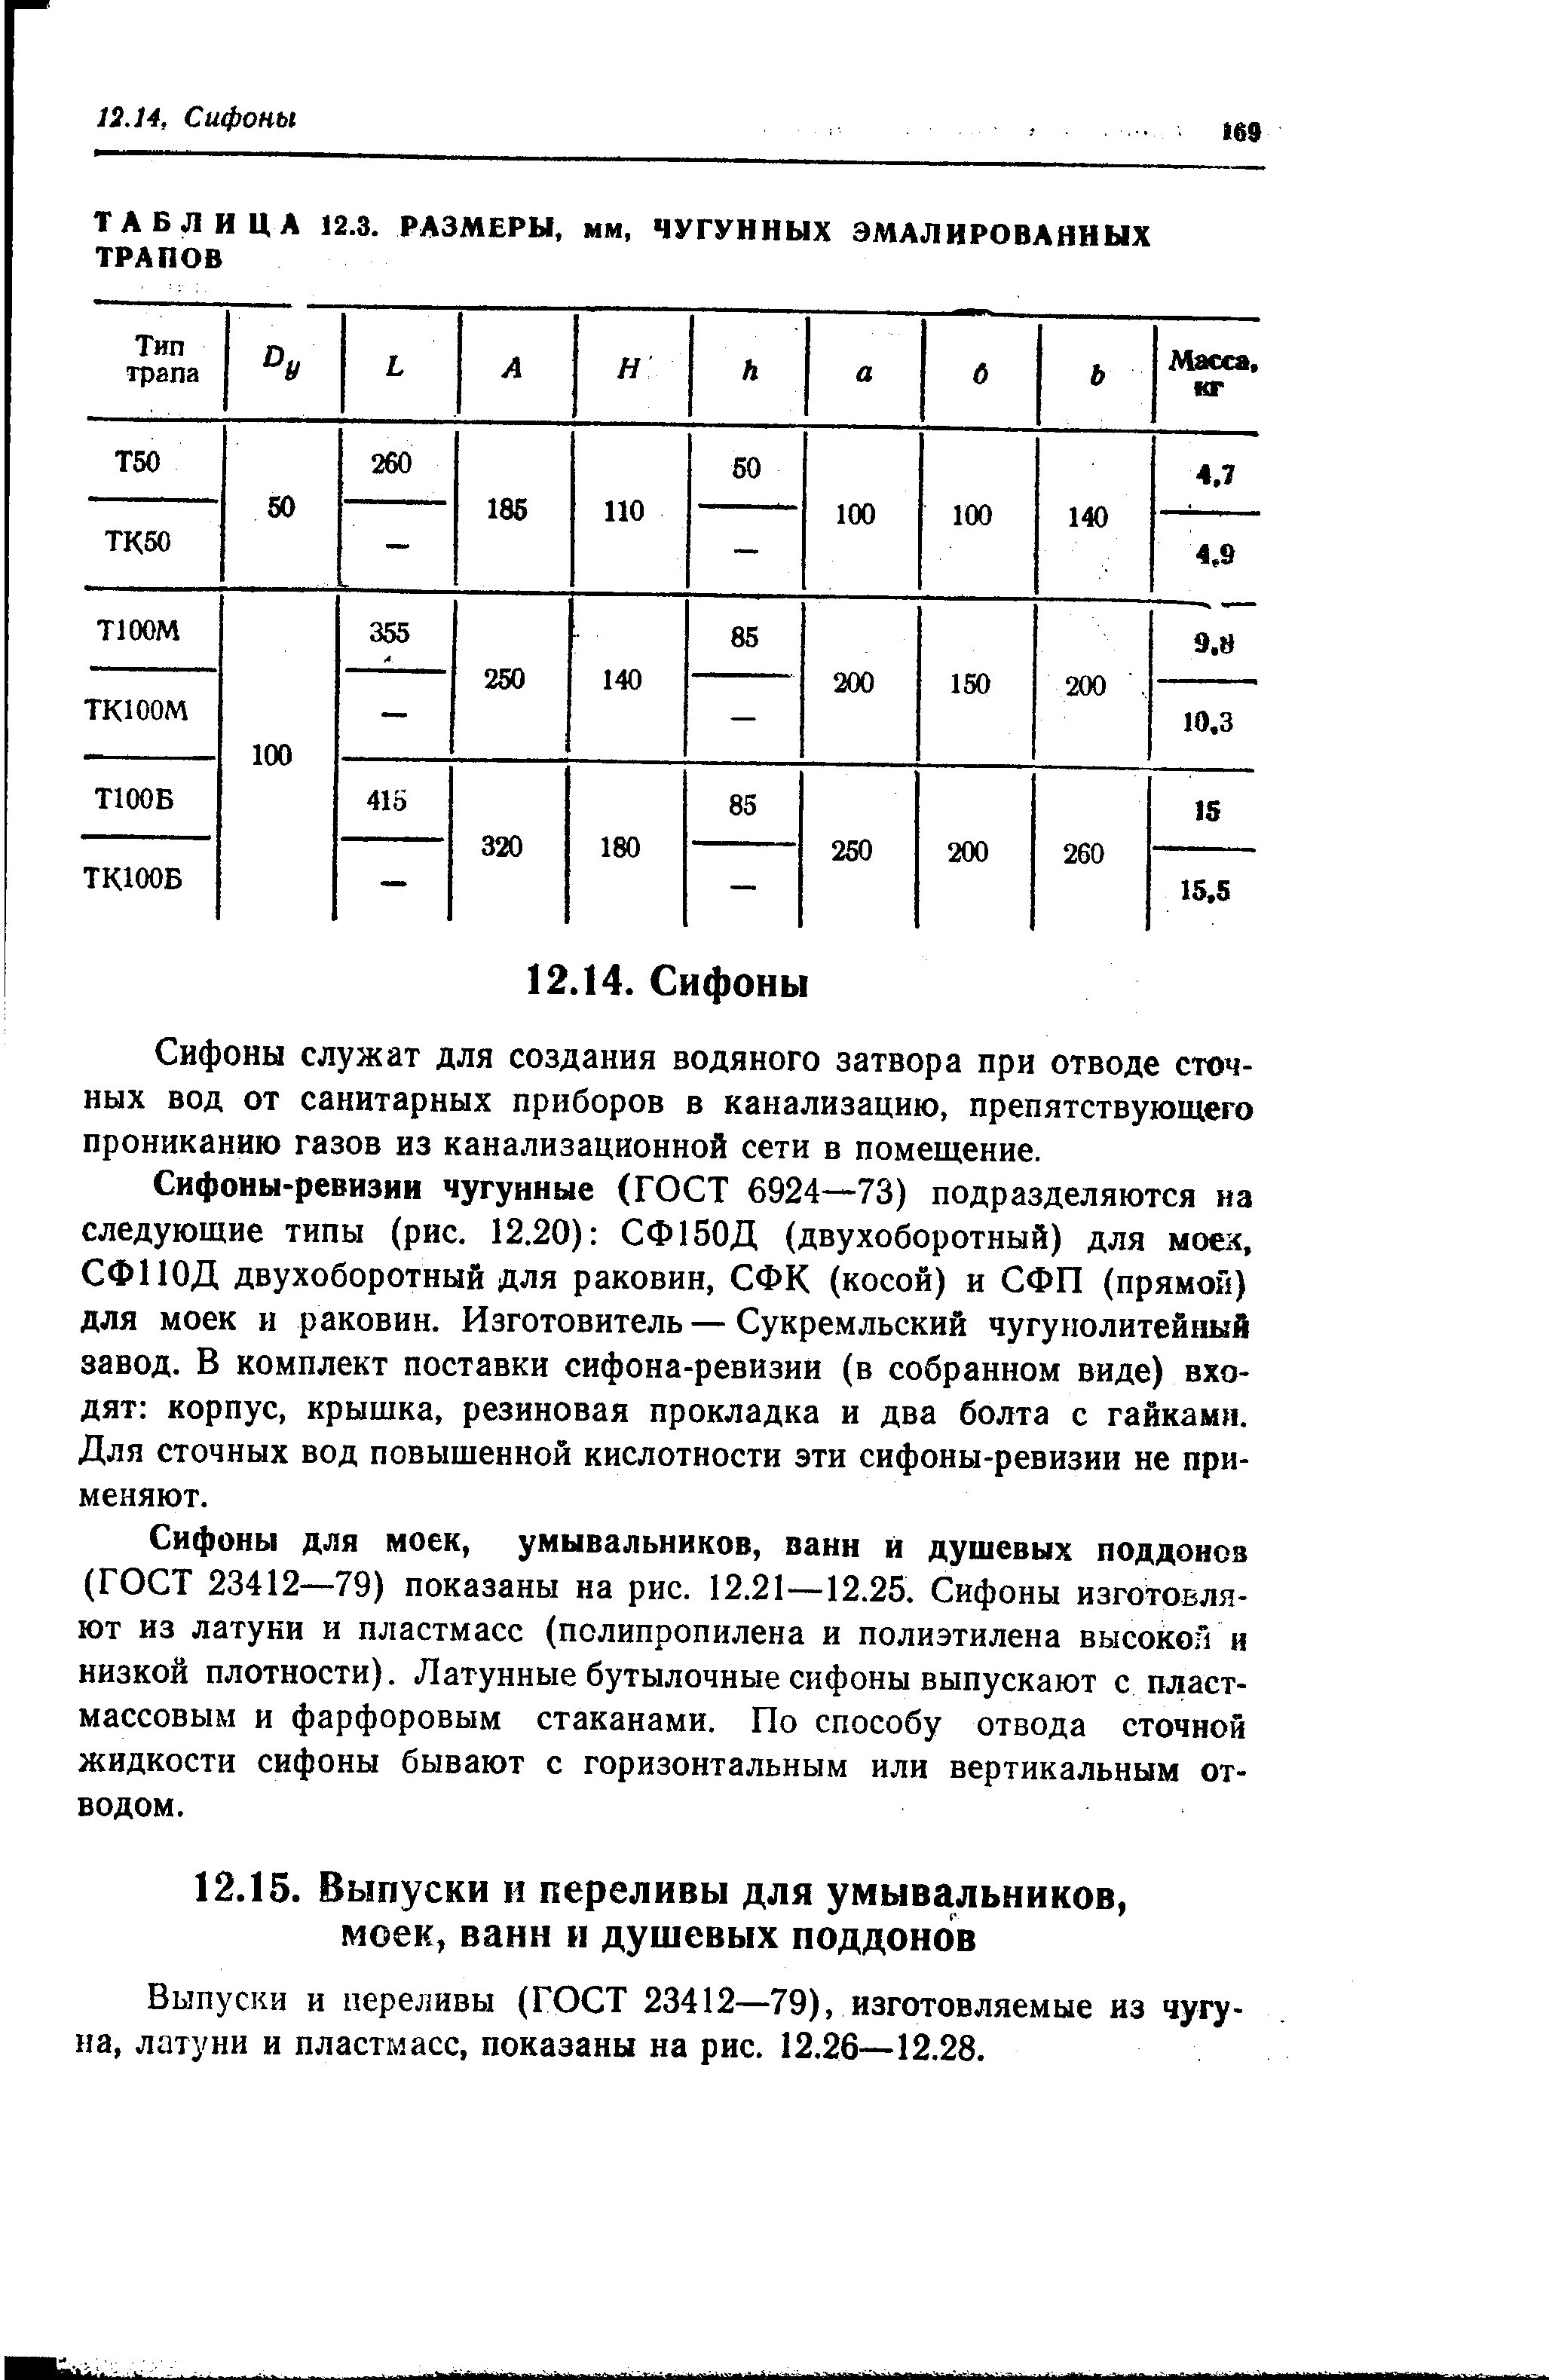 Выпуски и переливы (ГОСТ 23412—79), изготовляемые из чугуна, латуни и пластмасс, показаны на рис. 12.26—12.28.
